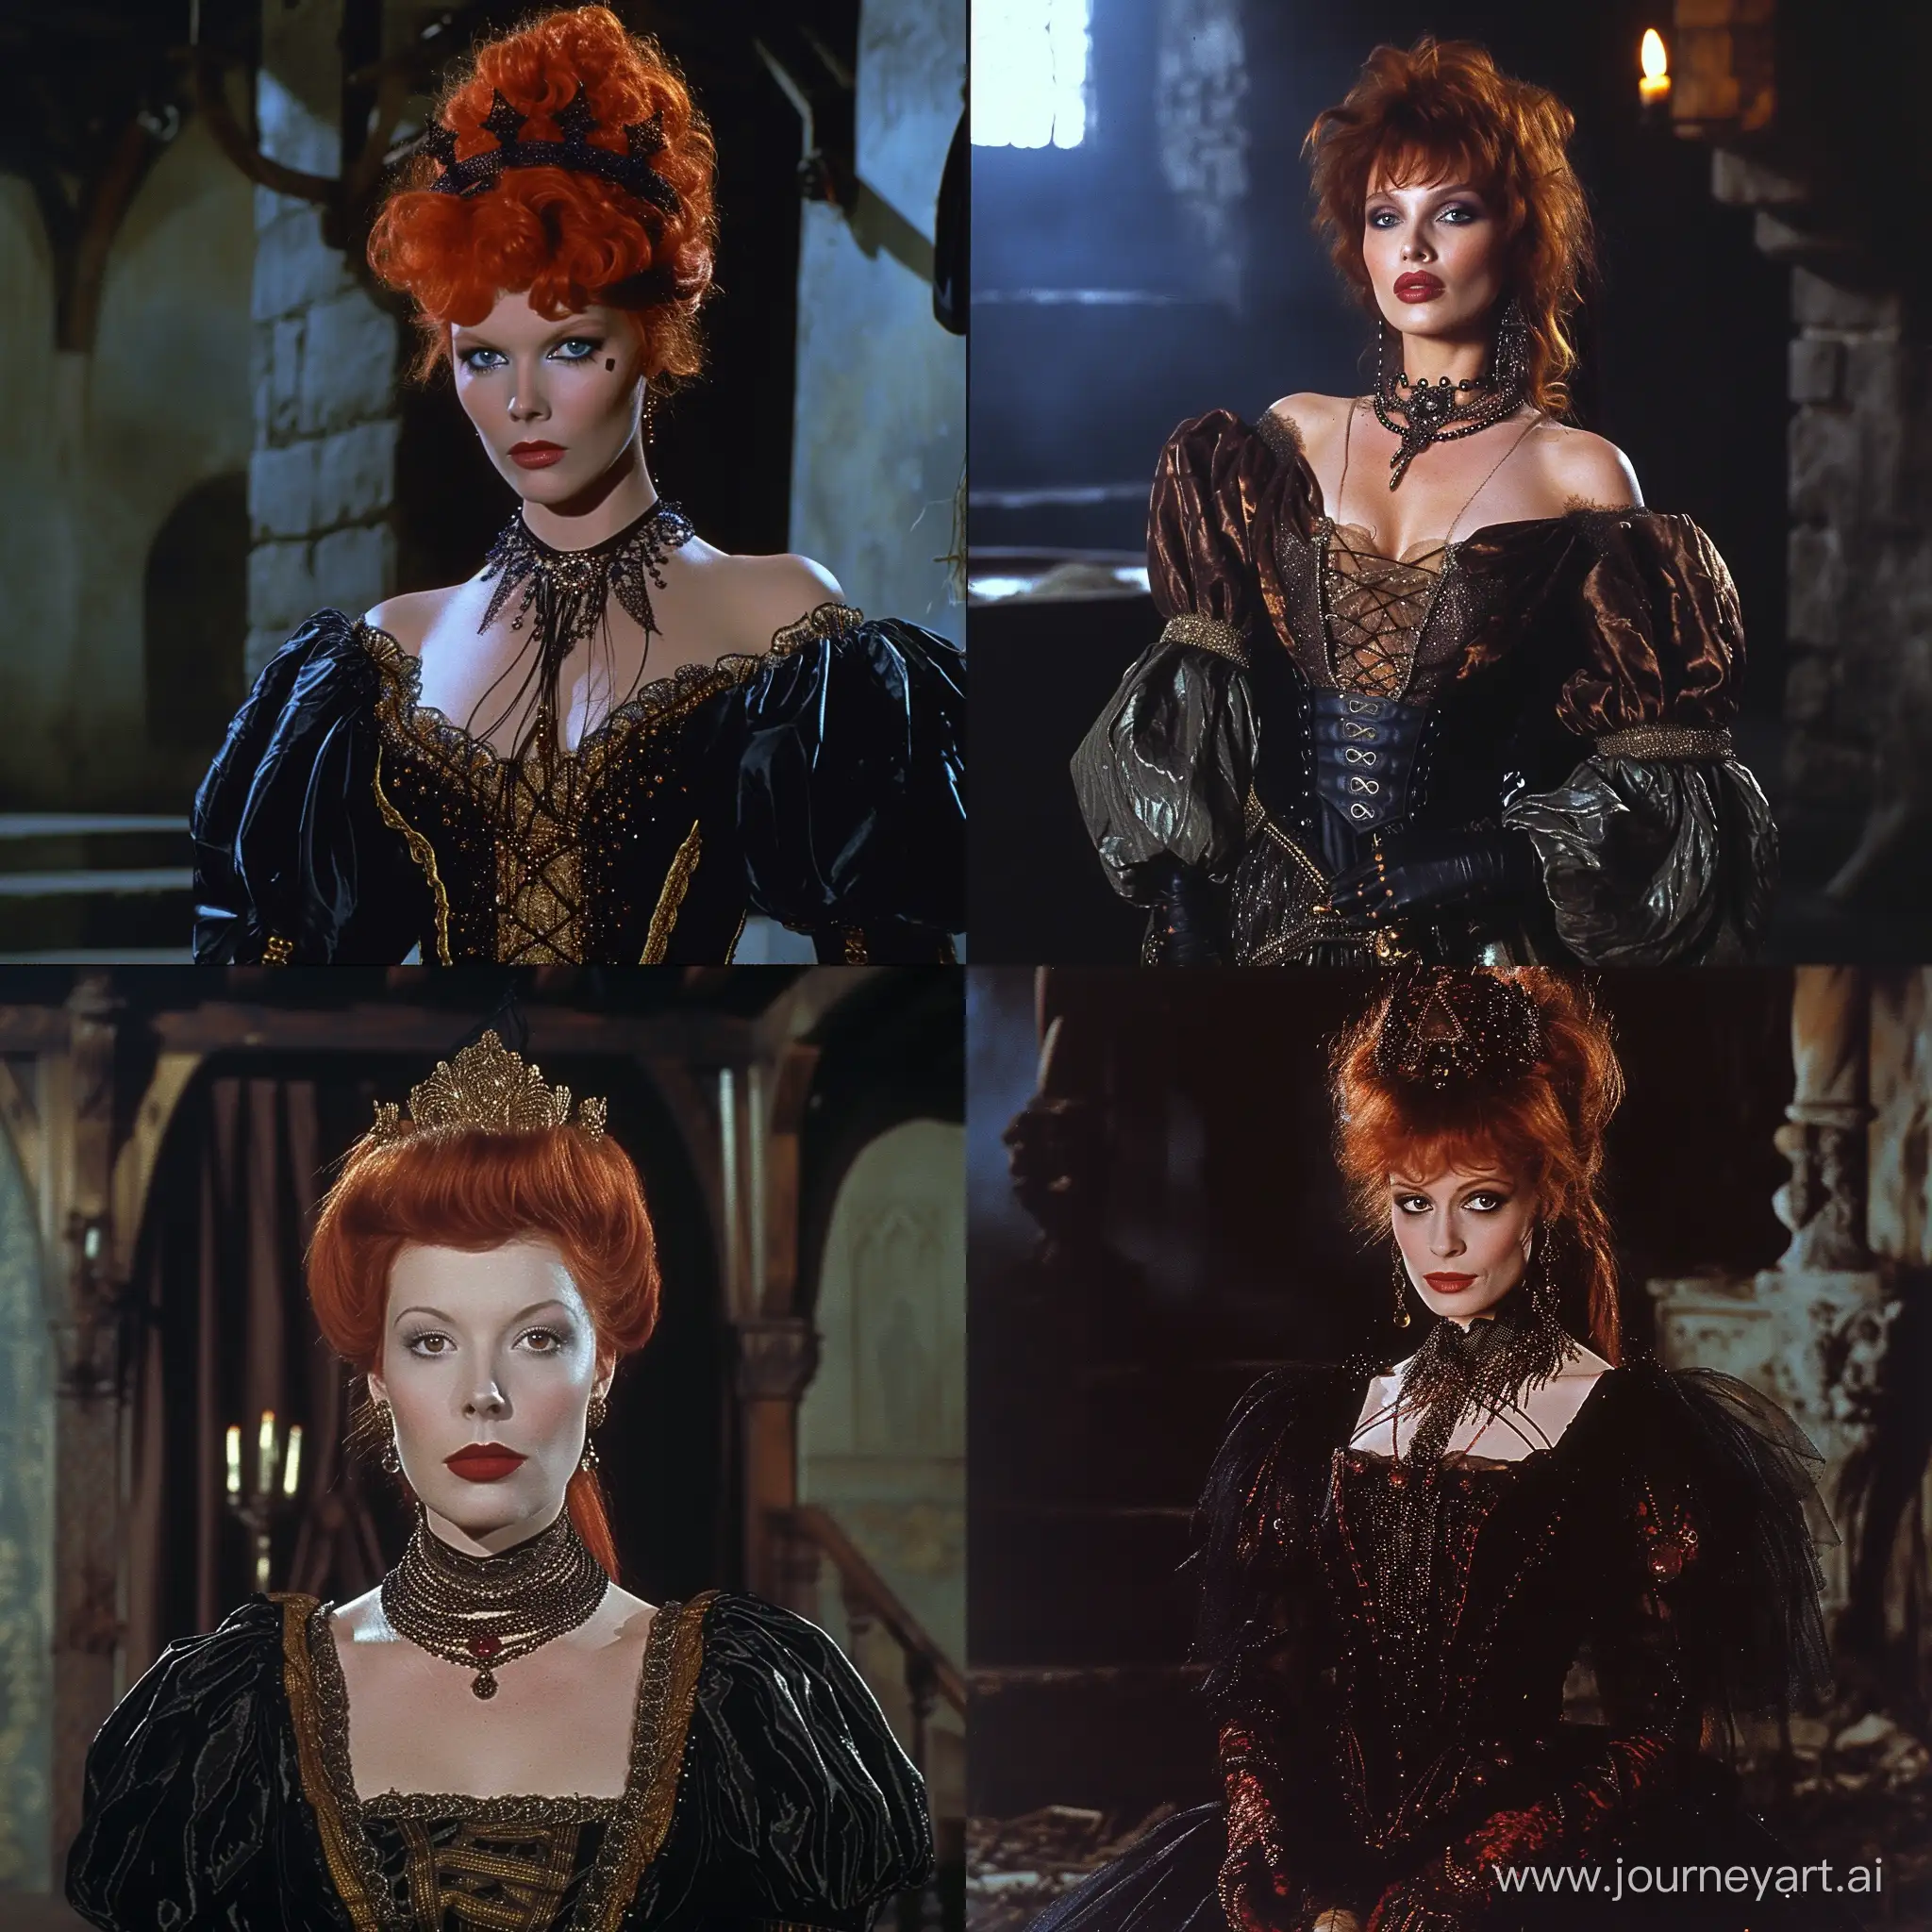 Renaissance-Era-Black-Widow-in-Dark-Film-Scene